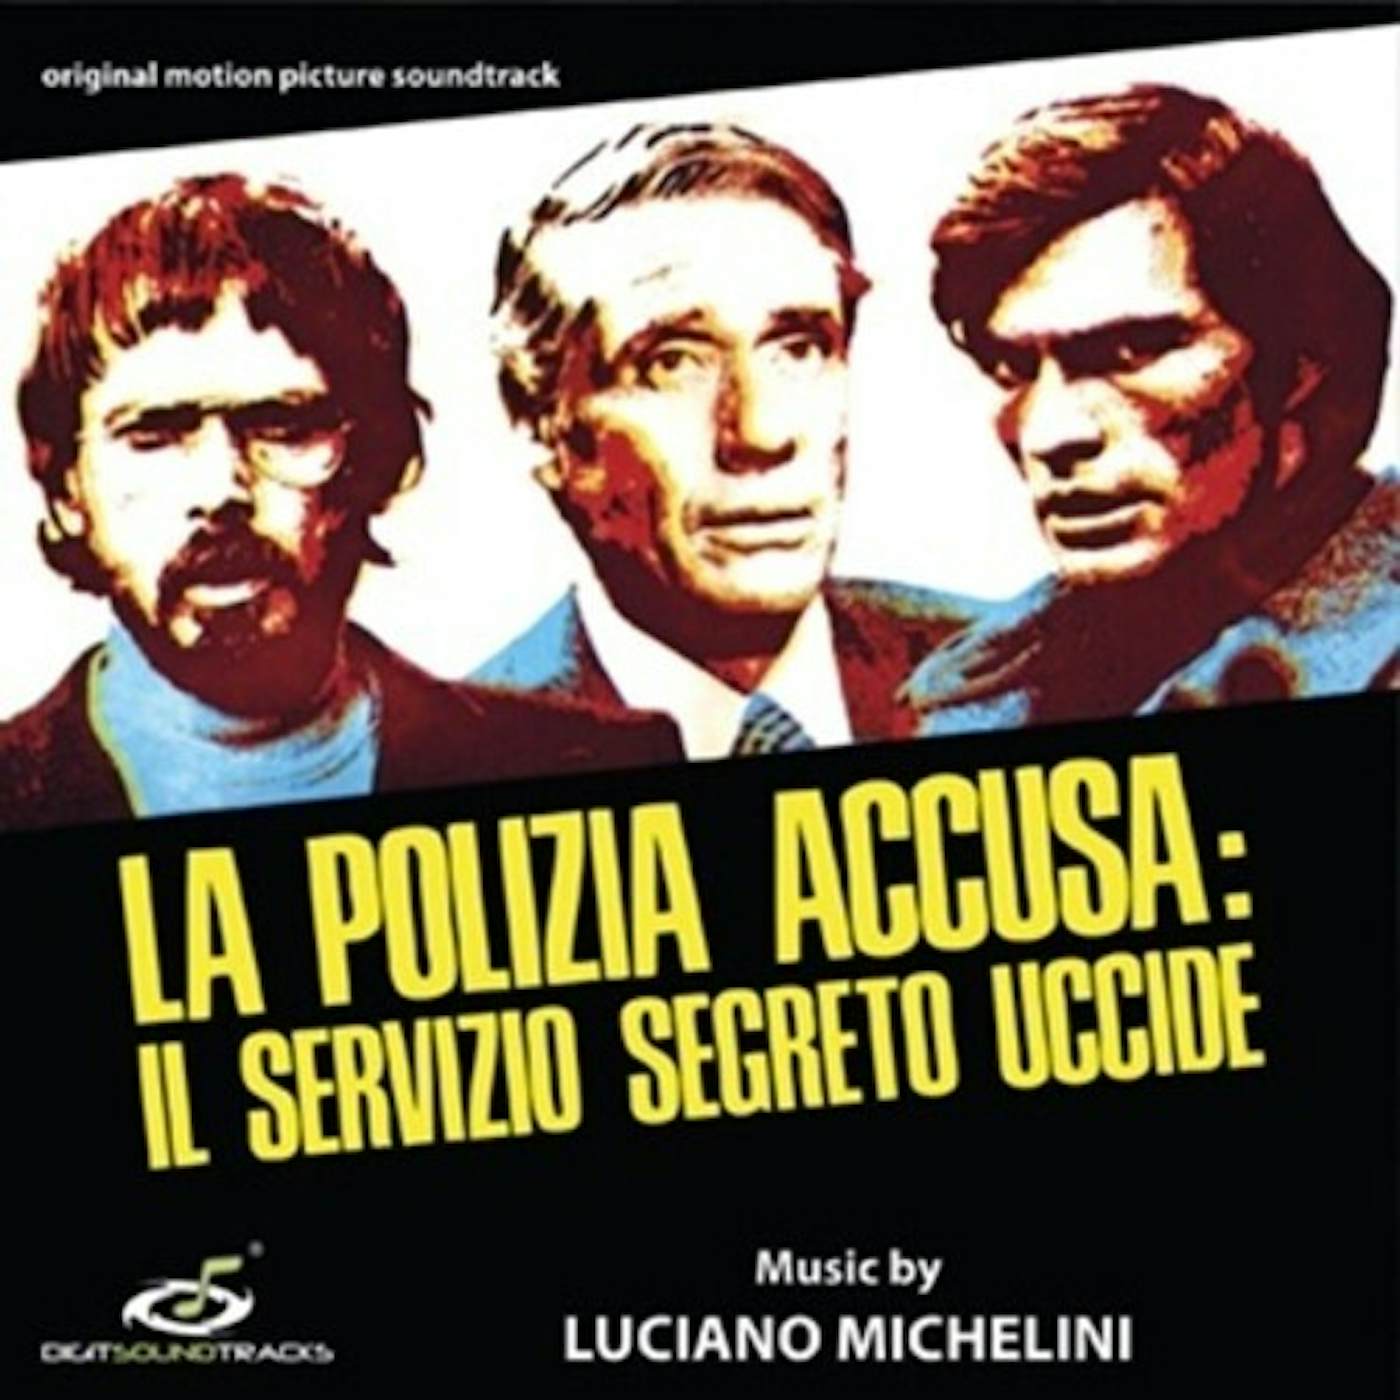 Luciano Michelini POLIZIA ACCUSA: SERVIZIO SEGRETO UCCIDE - Original Soundtrack CD